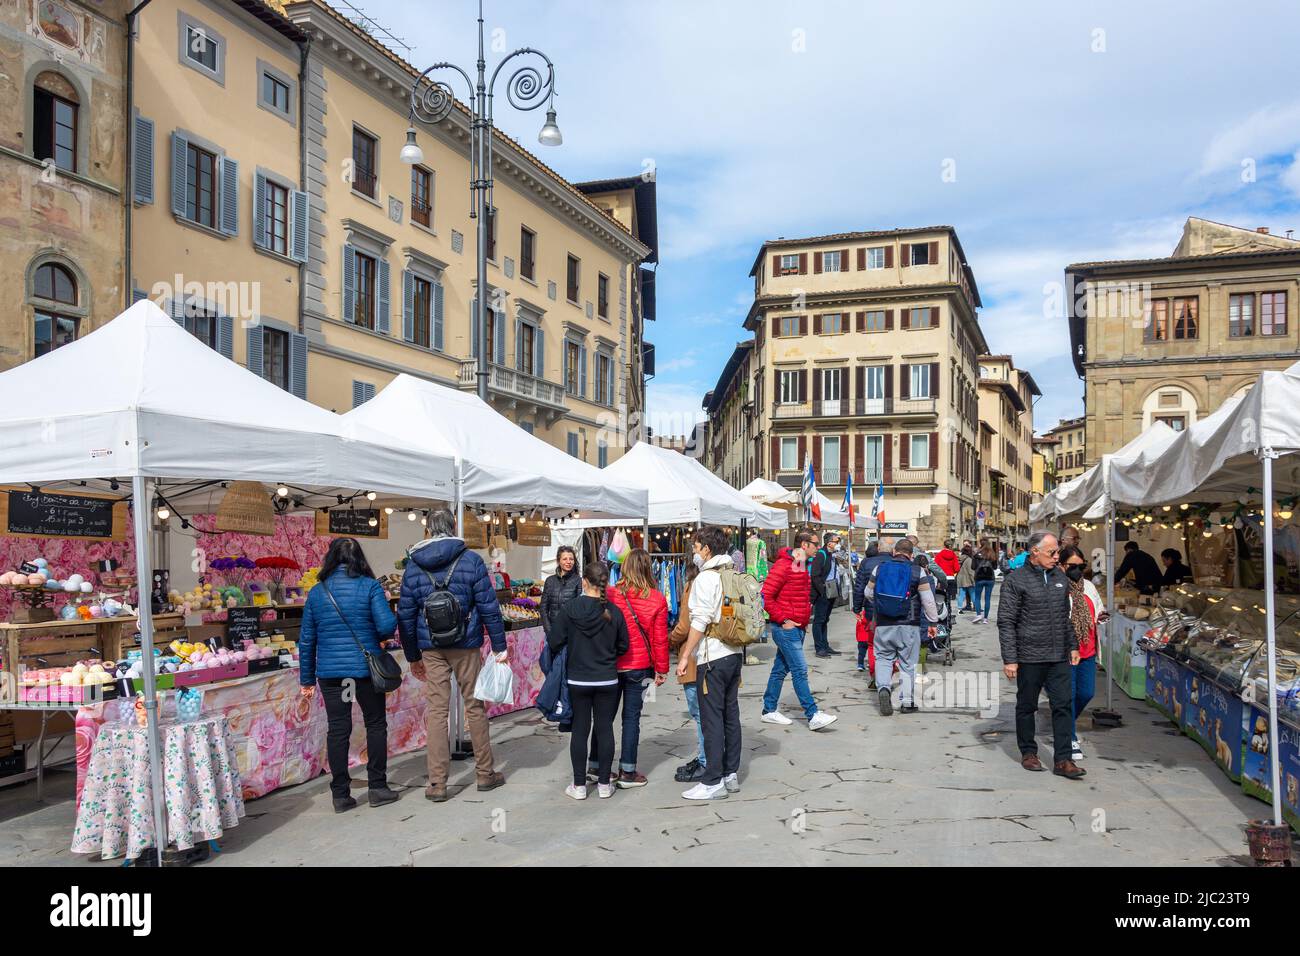 Bancarelle del mercato Outdoor, Piazza di Santa Croce, Firenze (Firenze), Regione Toscana, Italia Foto Stock